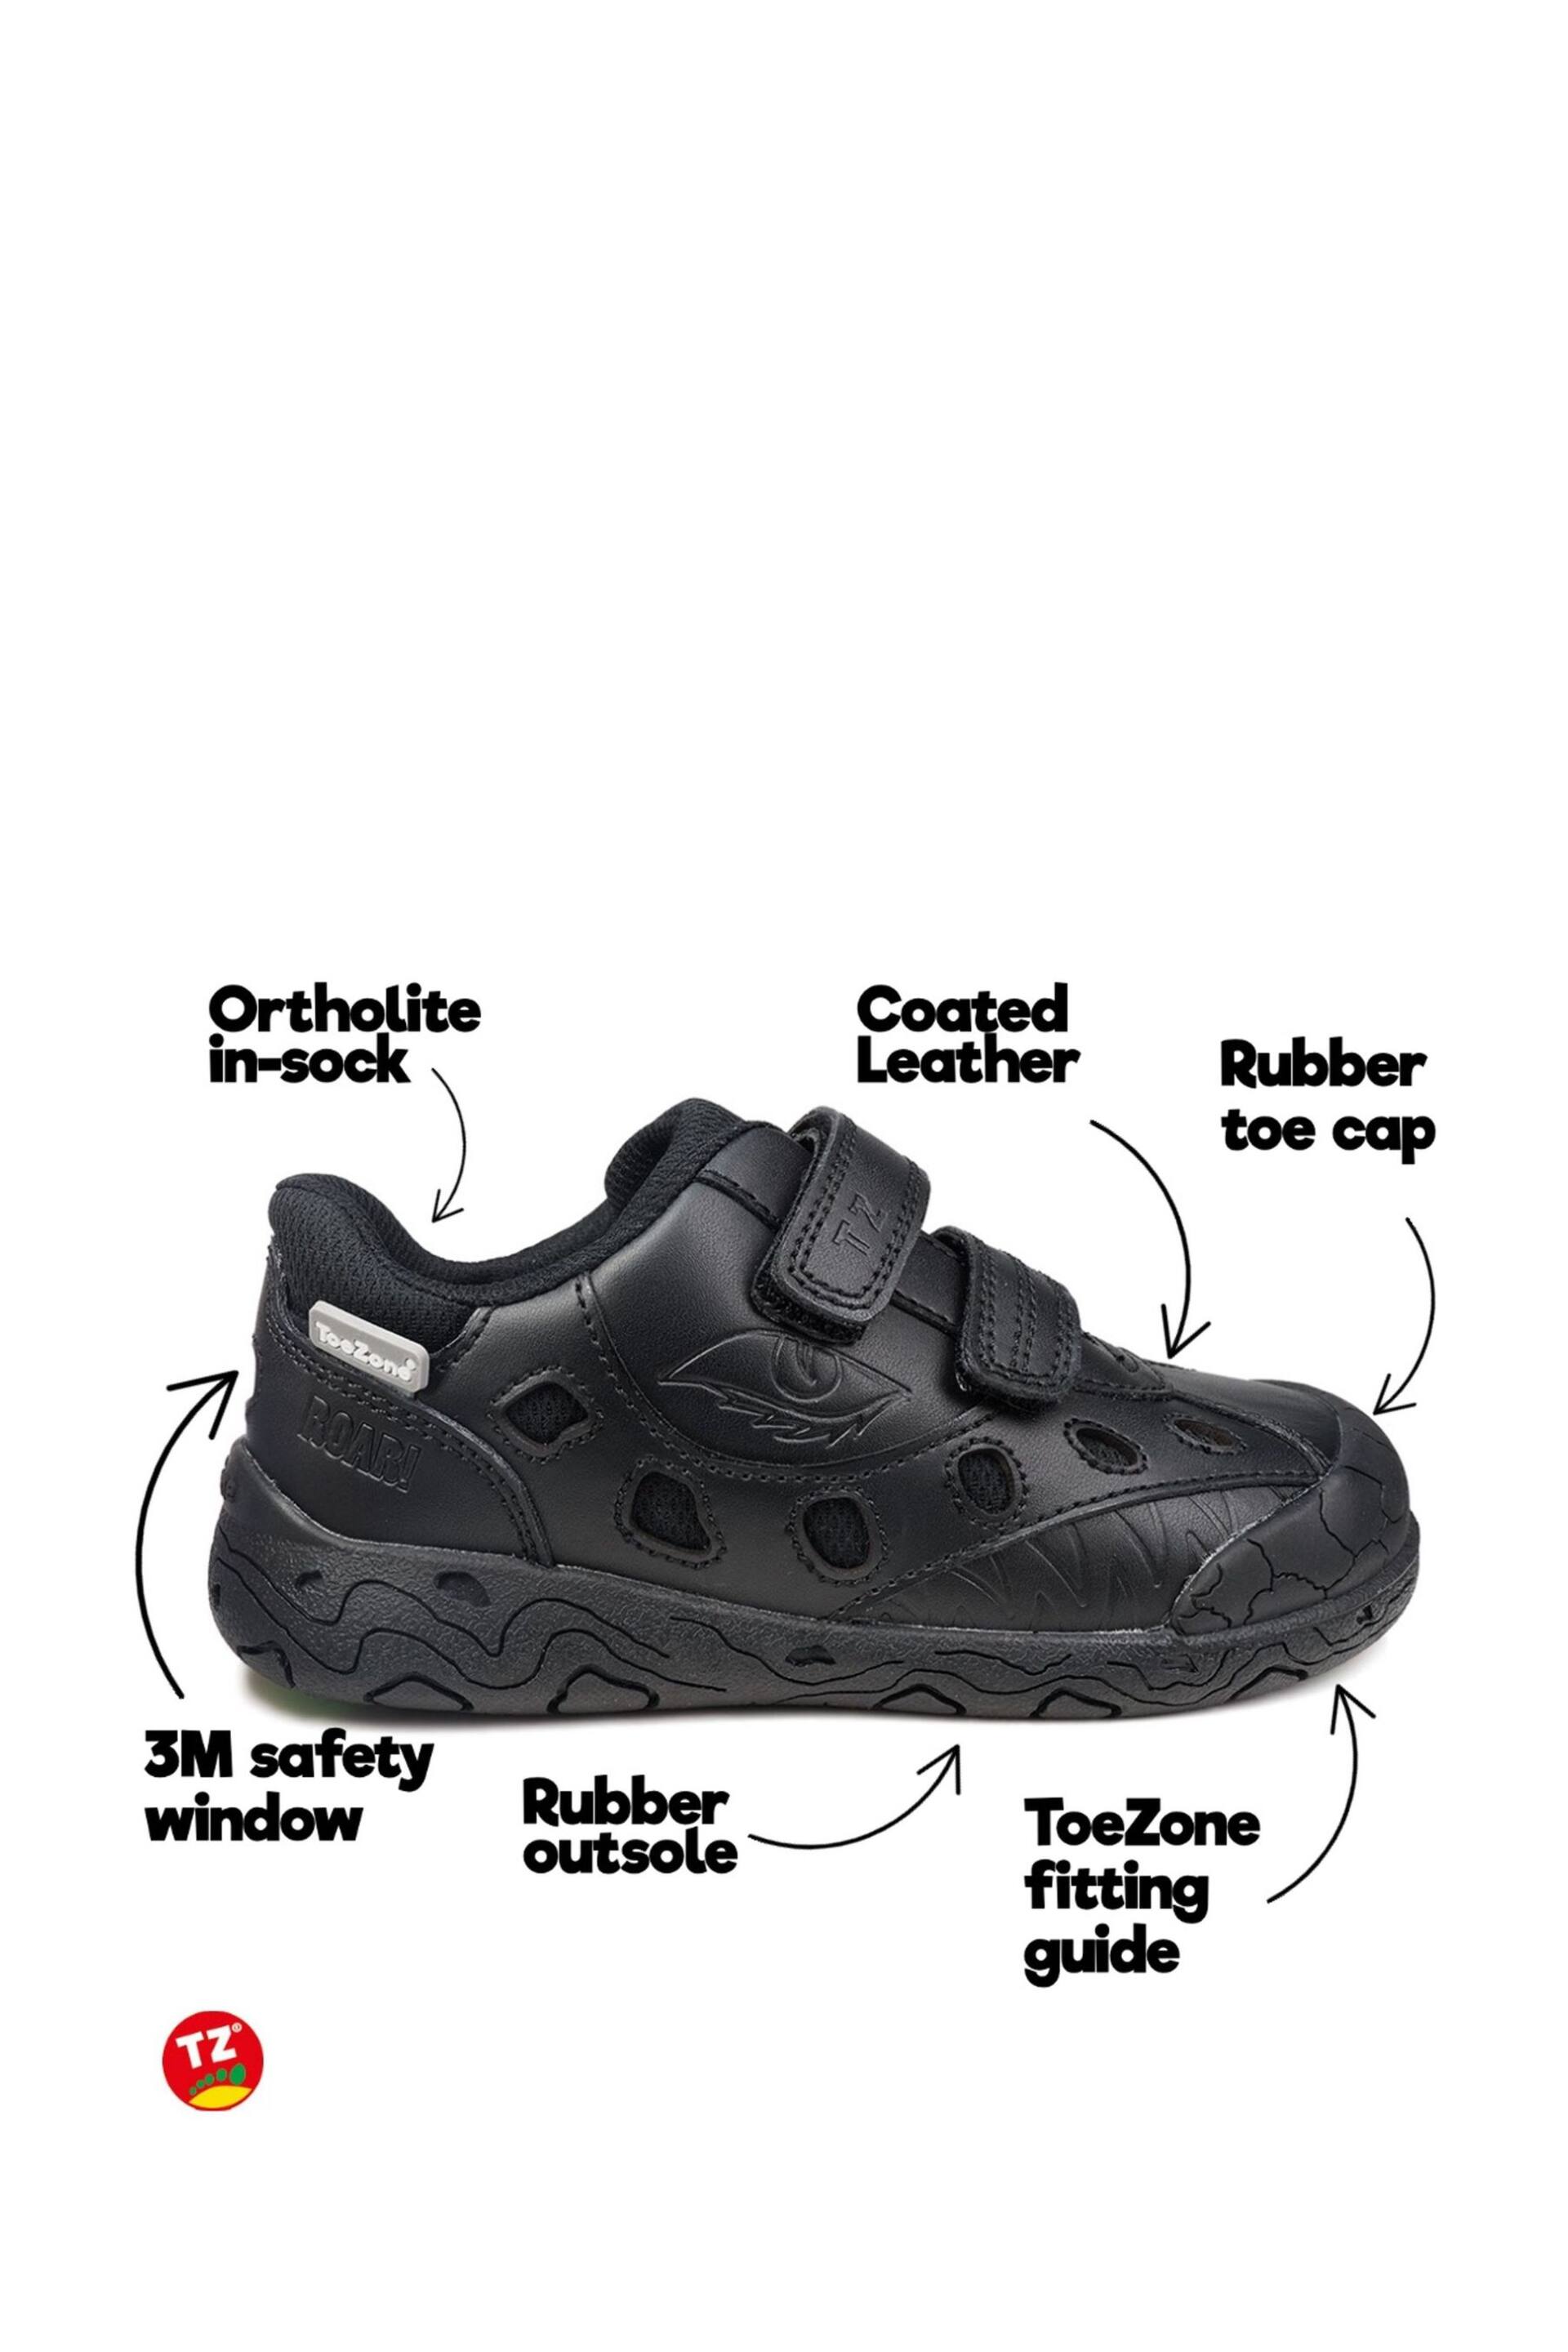 Toezone Jay Black Dinosaur Eco Friendly Ortholite Shoe - Image 7 of 11